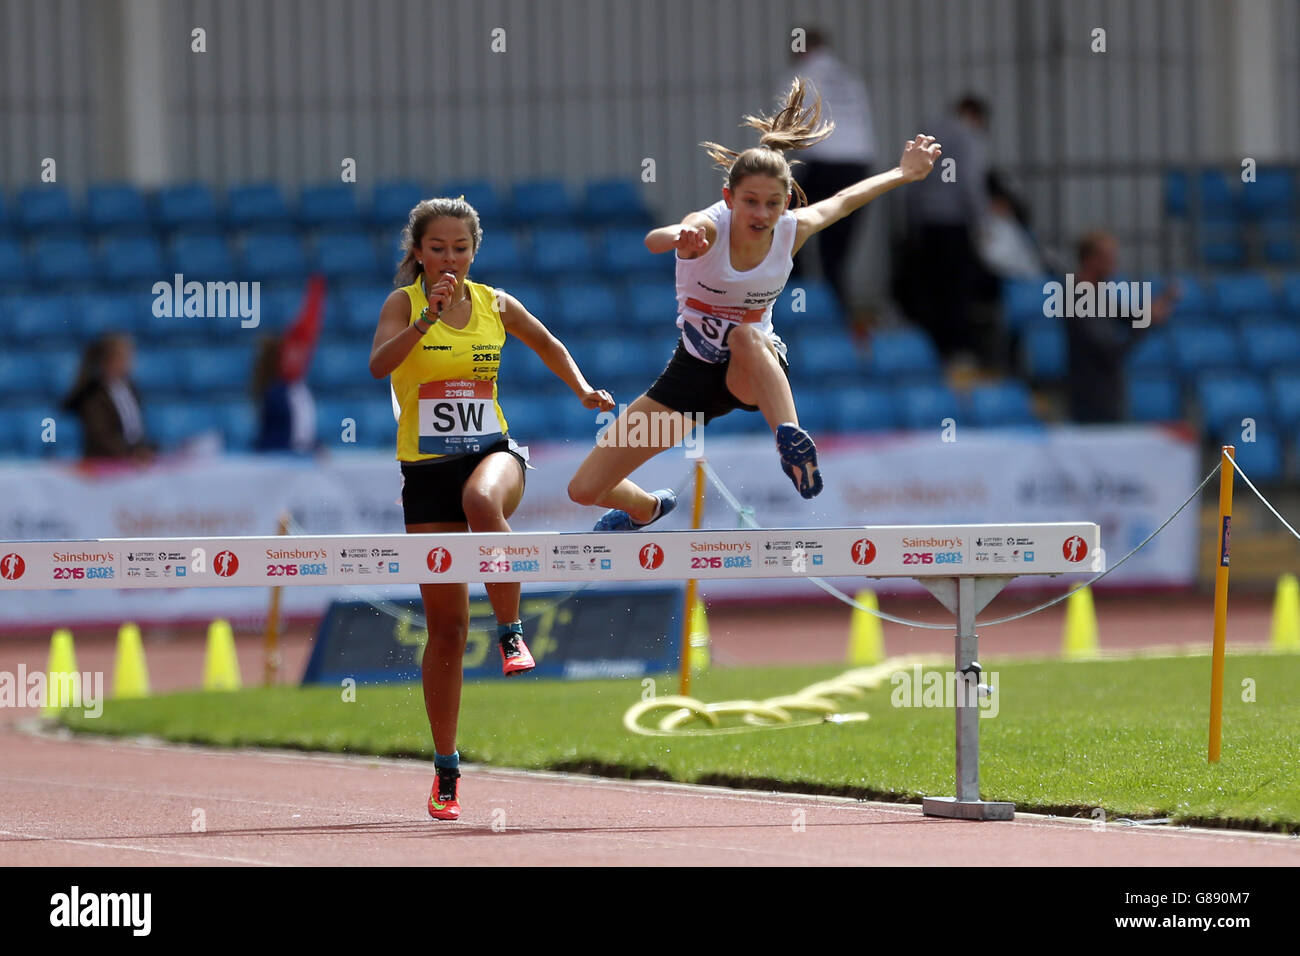 Le Yasmin Austridge du Sud-est de l'Angleterre saute un obstacle pendant les filles de 1500m steeplechase aux Jeux scolaires de Sainsbury 2015 à l'arène régionale de Manchester. Banque D'Images